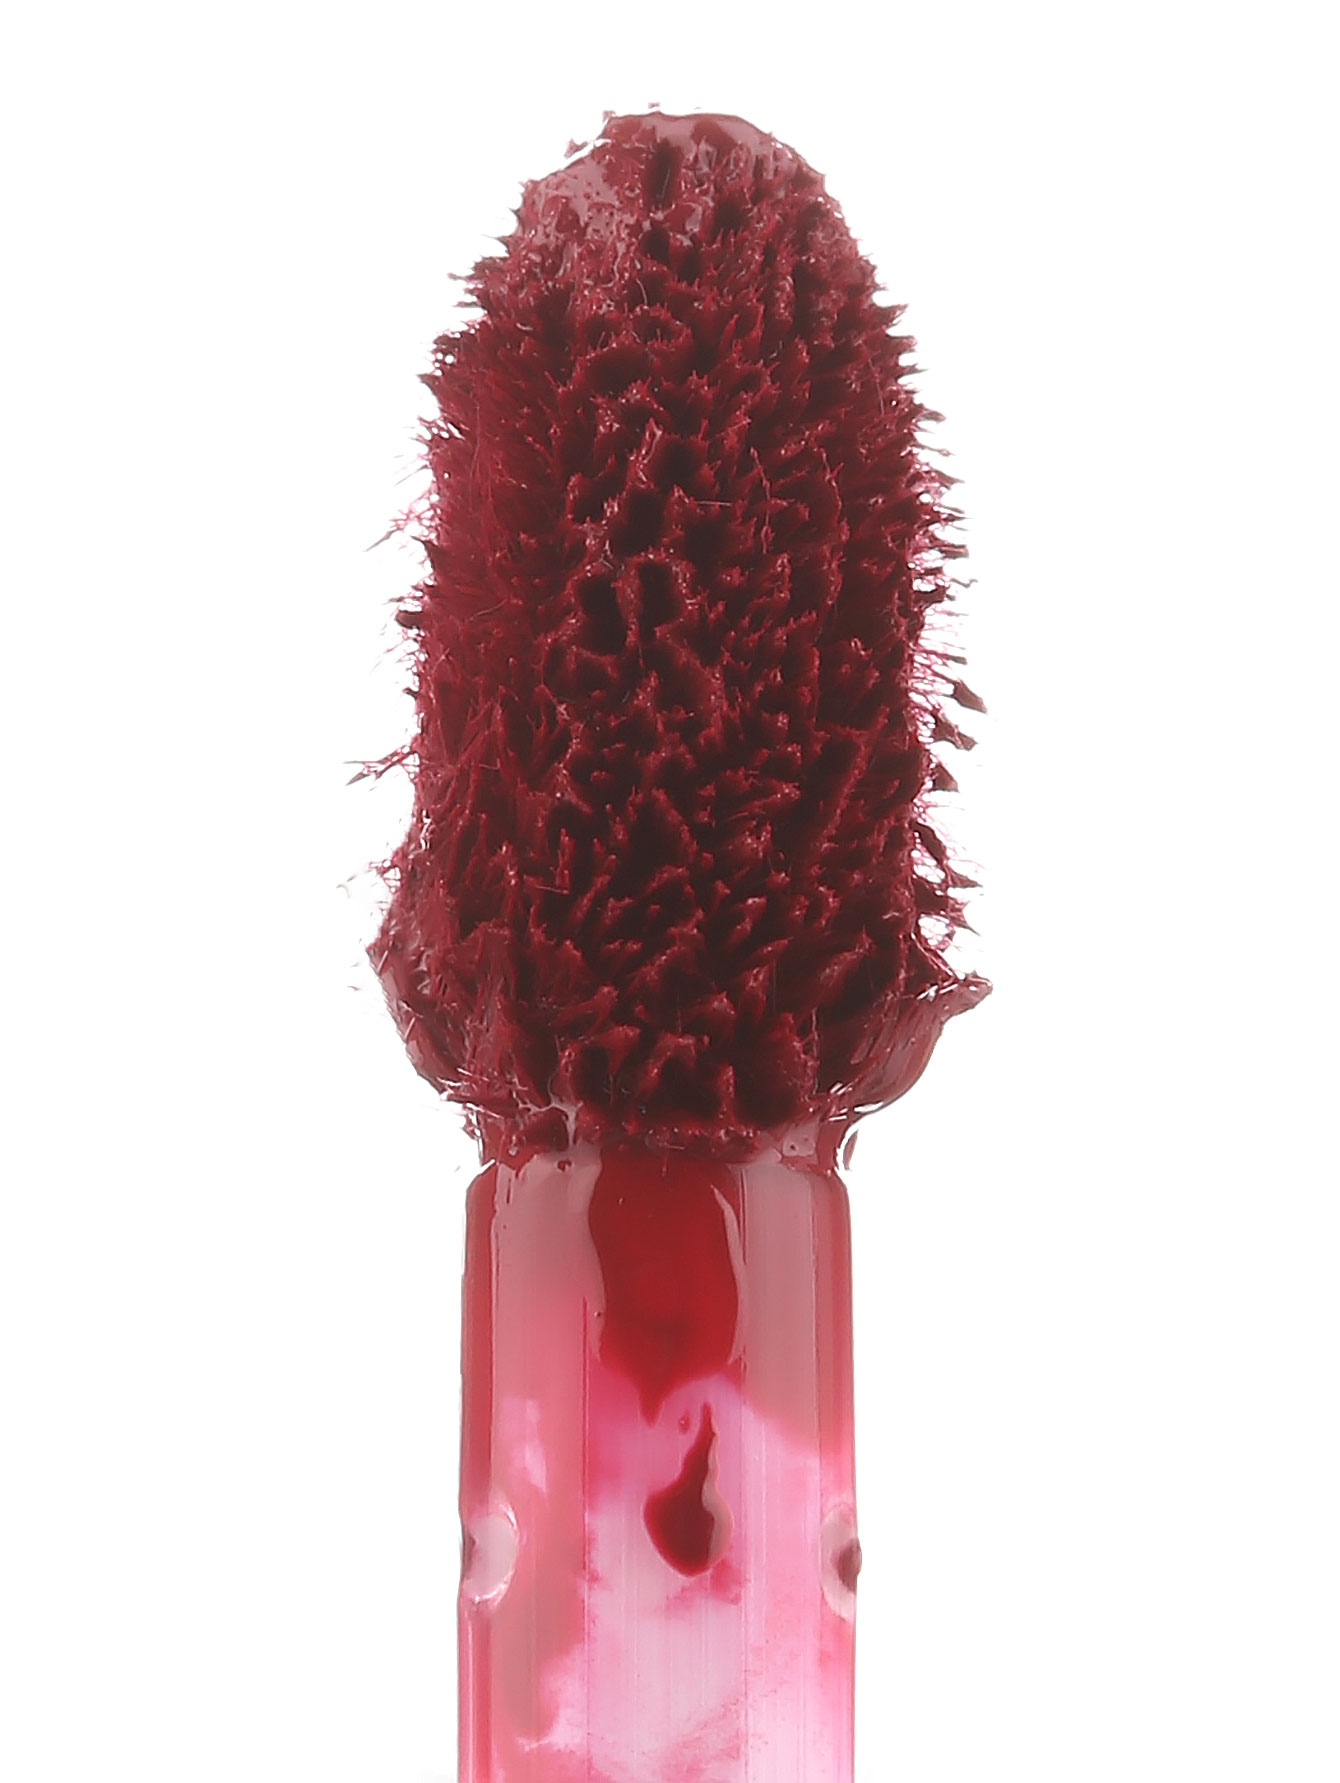  Жидкая губная помада - Strange Bloom, Pure Color Envy, 7ml - Модель Верх-Низ